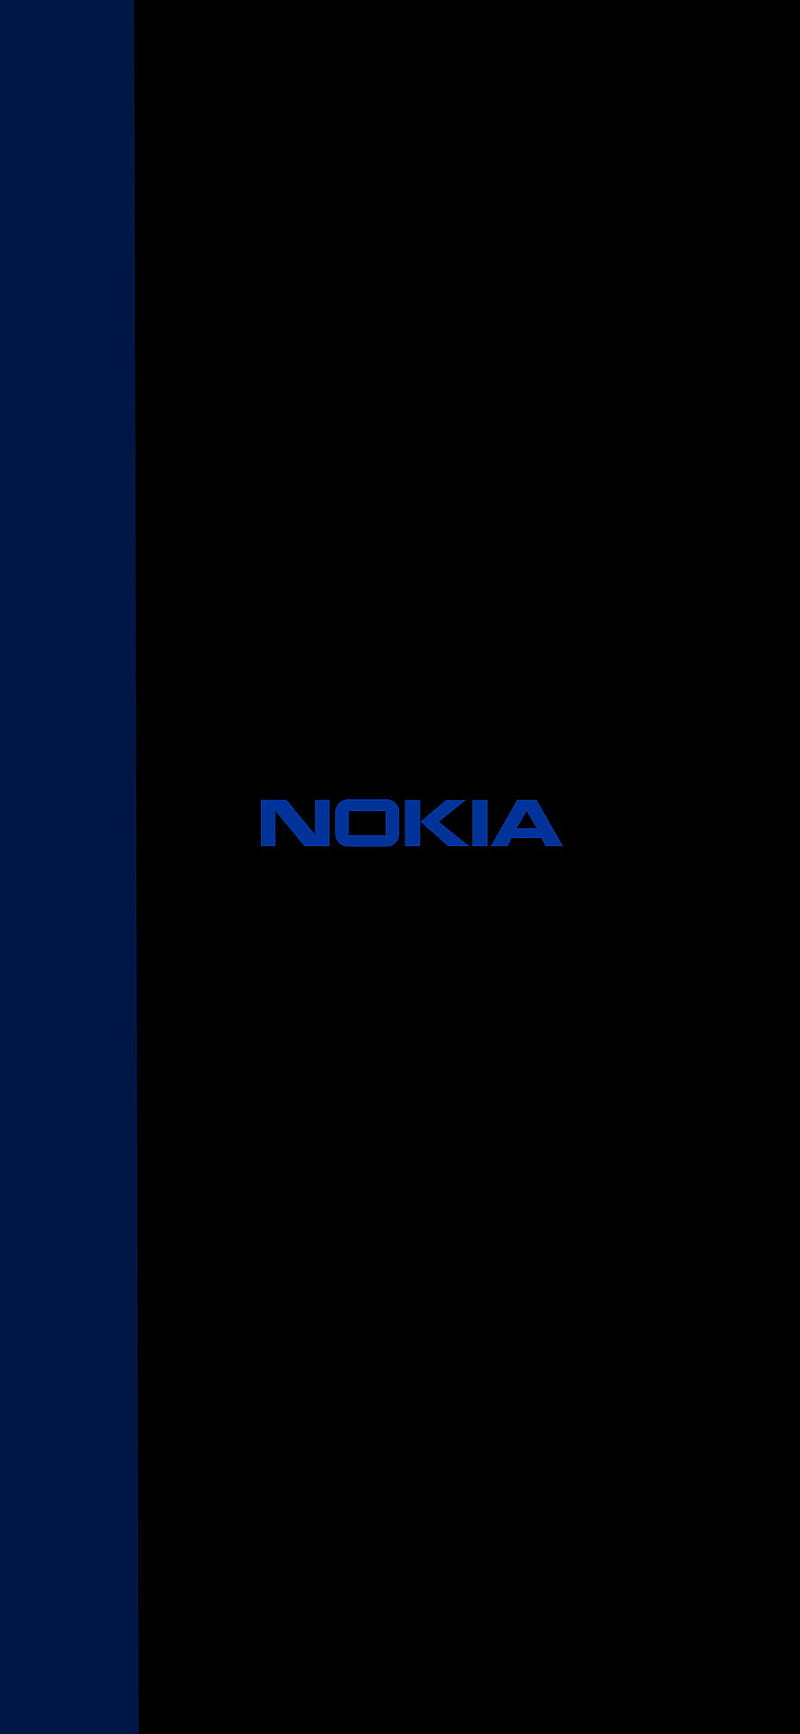 Nokia logo là biểu tượng kinh điển và đầy ý nghĩa của thương hiệu điện thoại Nokia. Xem ngay hình ảnh liên quan để tìm hiểu thêm về logo đình đám này.